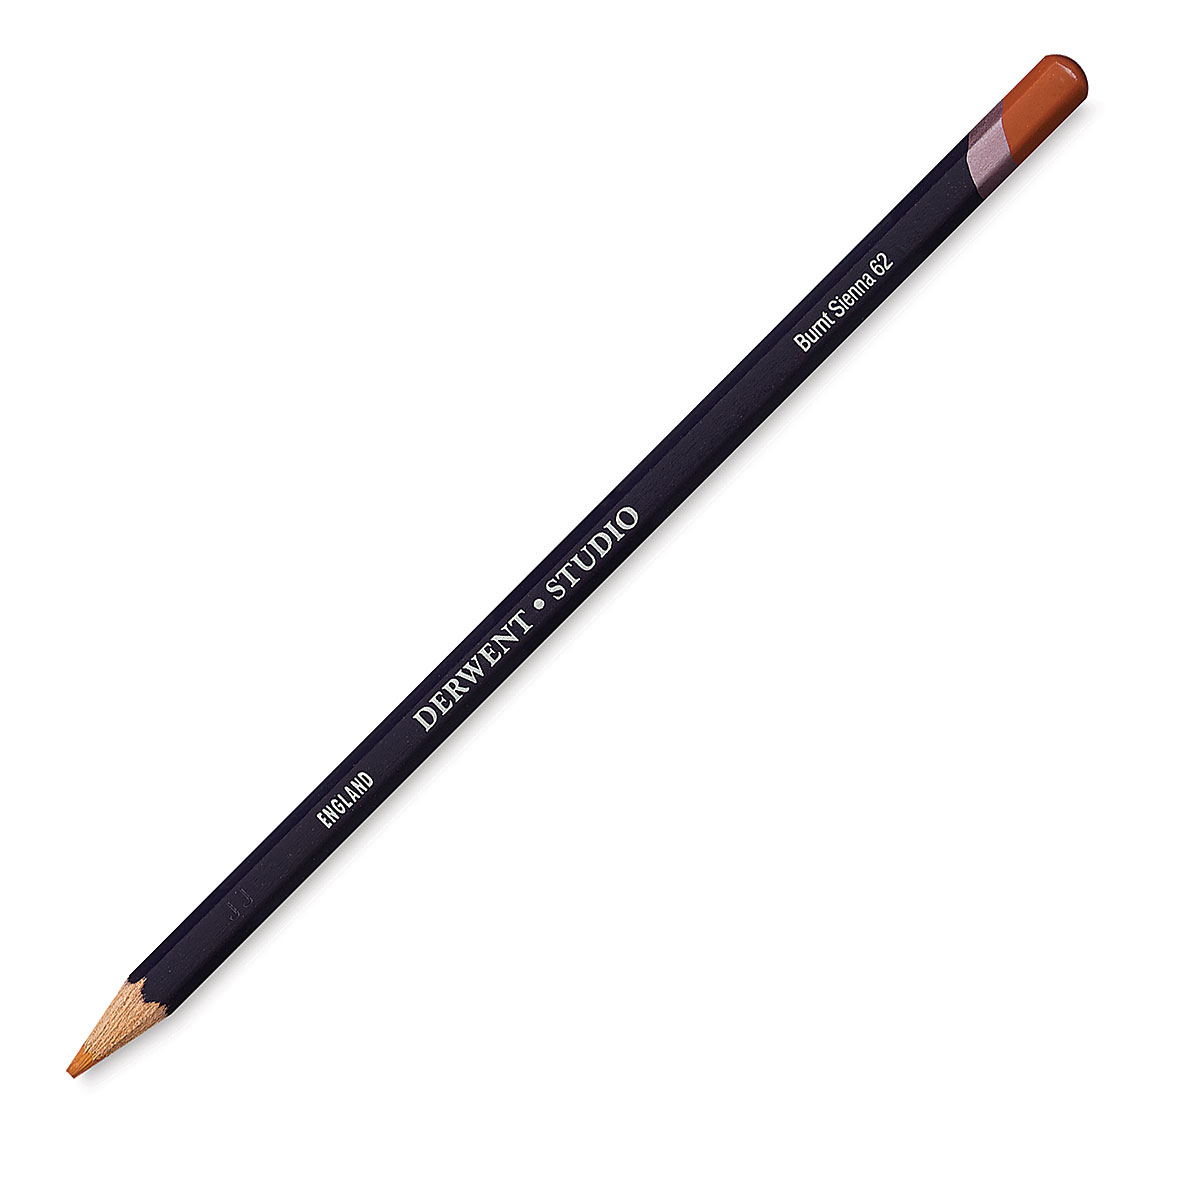 Derwent Studio Colored Pencils Review